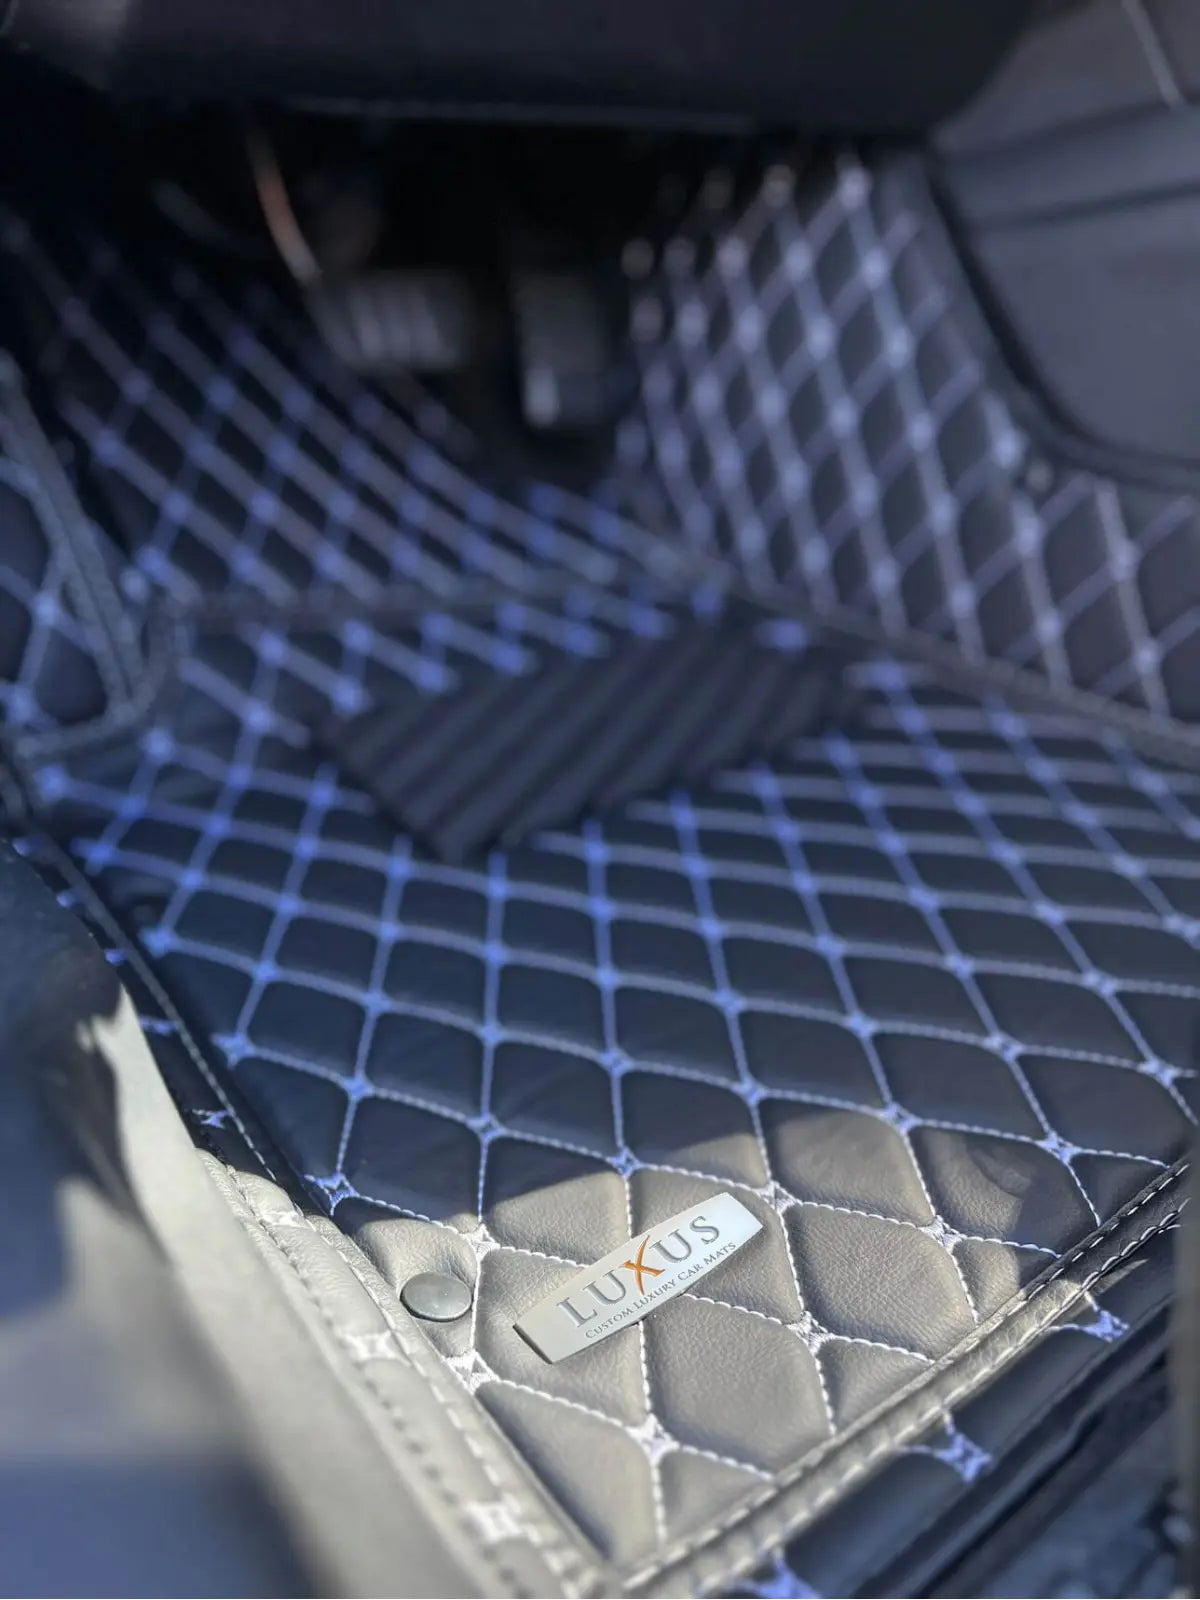 Fußmatten Auto Auto Fußmatten Luxus Leder Teppiche Für Tesla Für Modell S  2021-2023 Volle Schutz Auto Zubehör Fuß Teppich Autotepiche (Farbe :  WEINROT) : : Auto & Motorrad